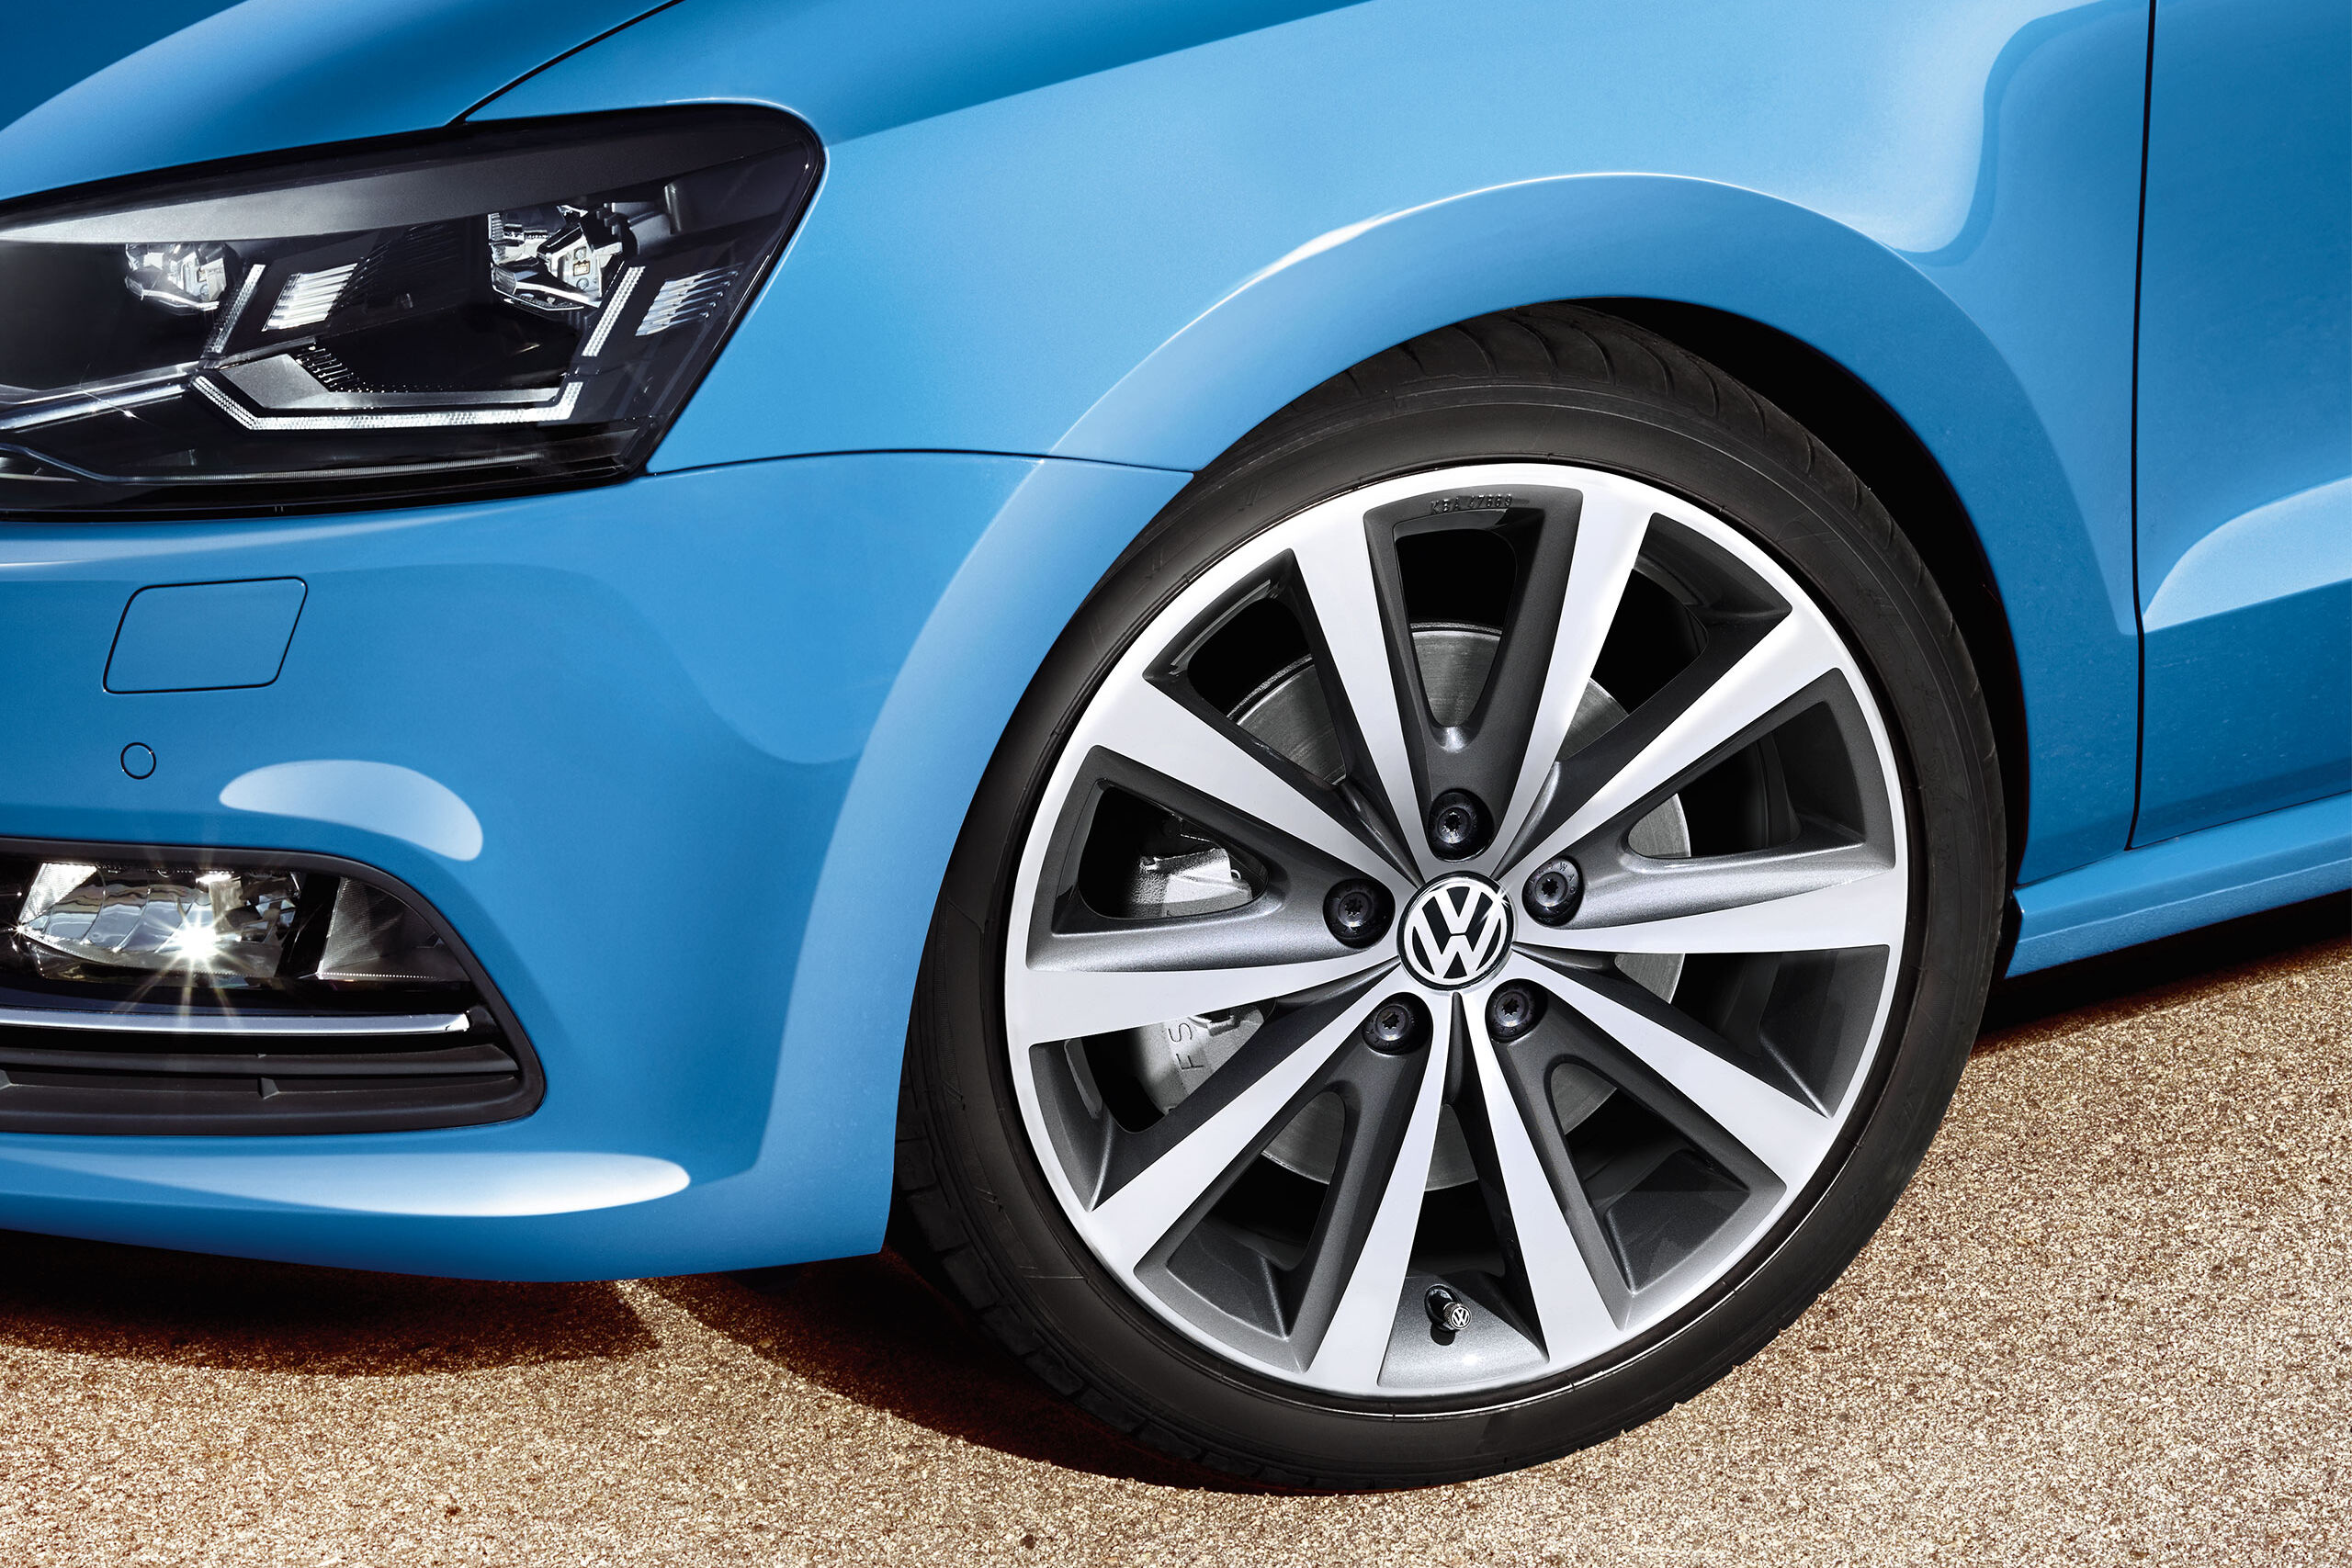 Uma vista detalhada de uma roda Polo 5 azul com pneu e jante VW Genuine - Acessórios Volkswagen